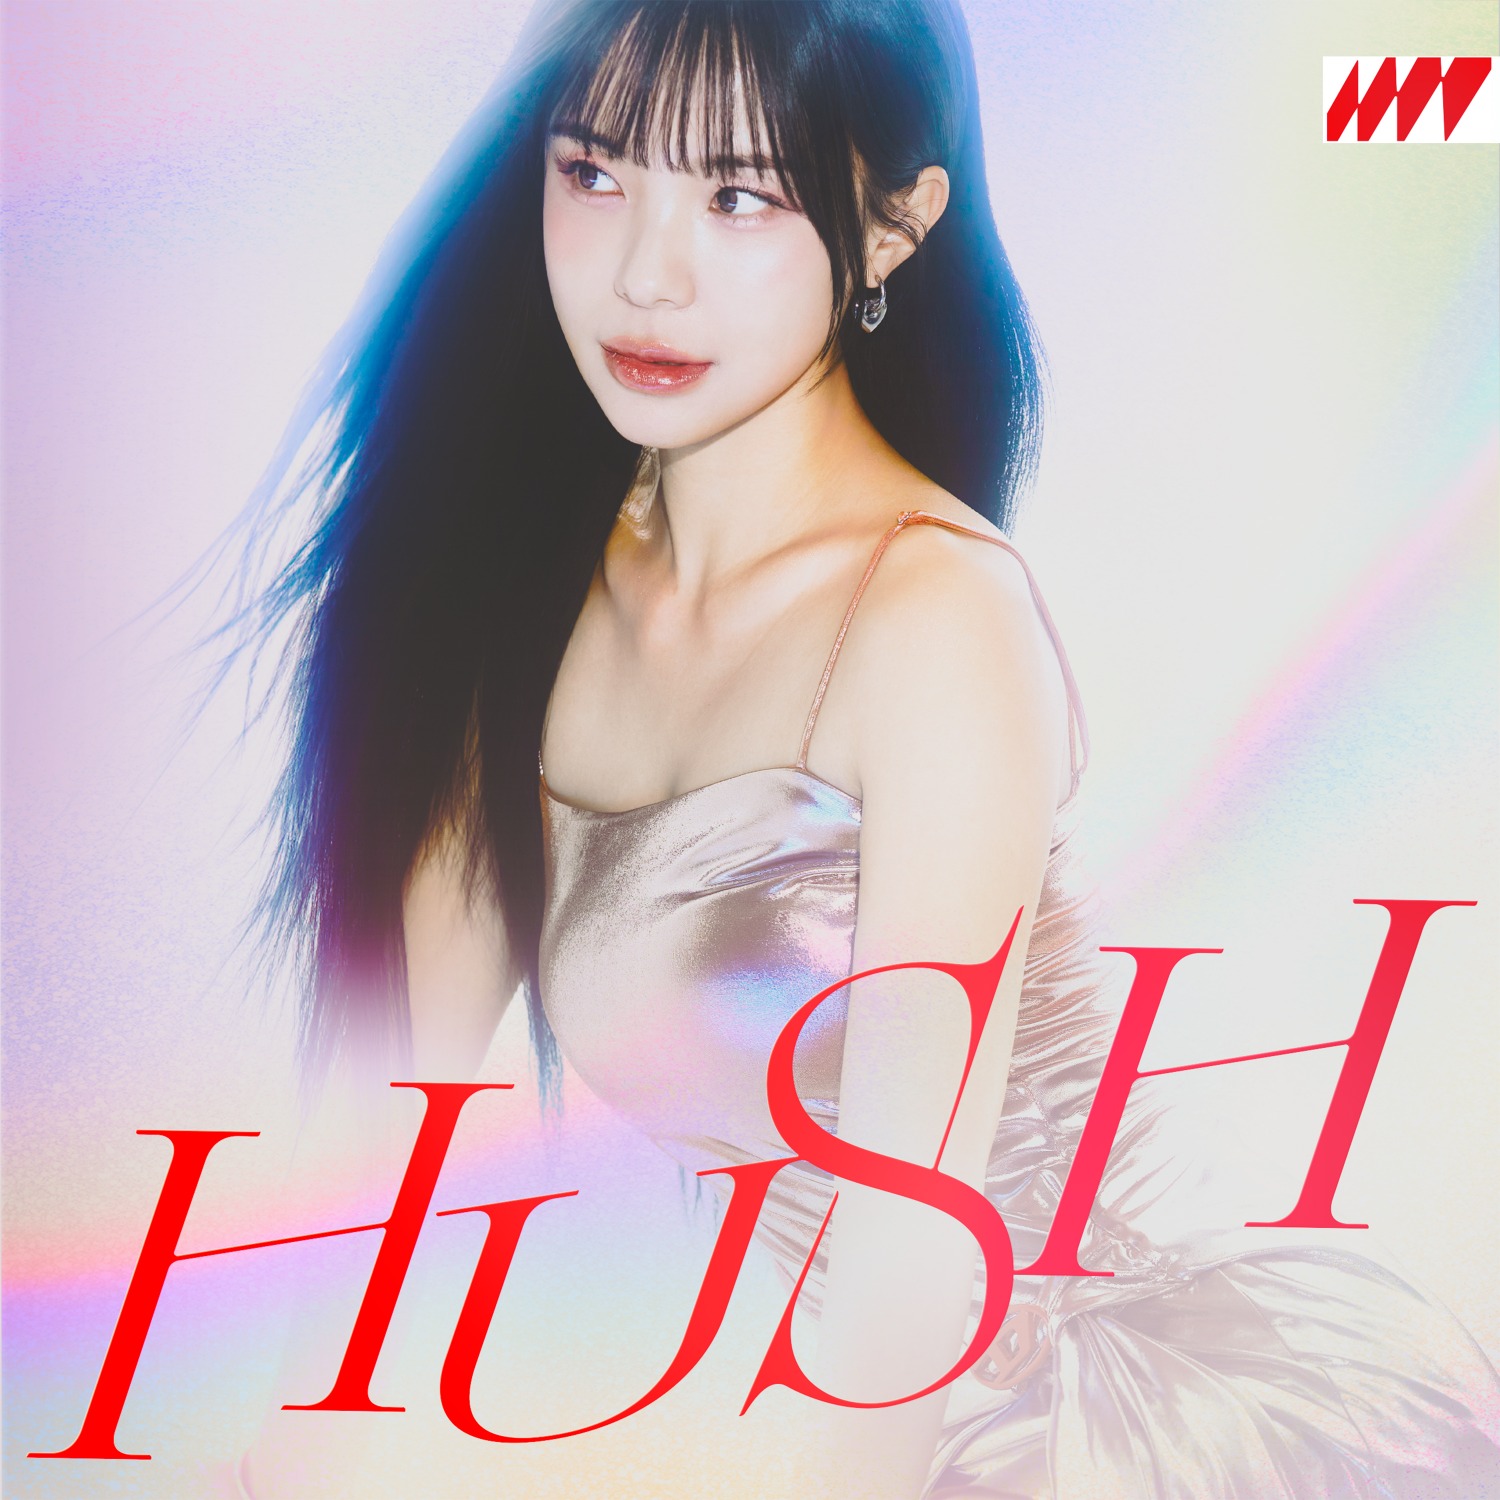 이다혜 – HUSH (CD Ver.)